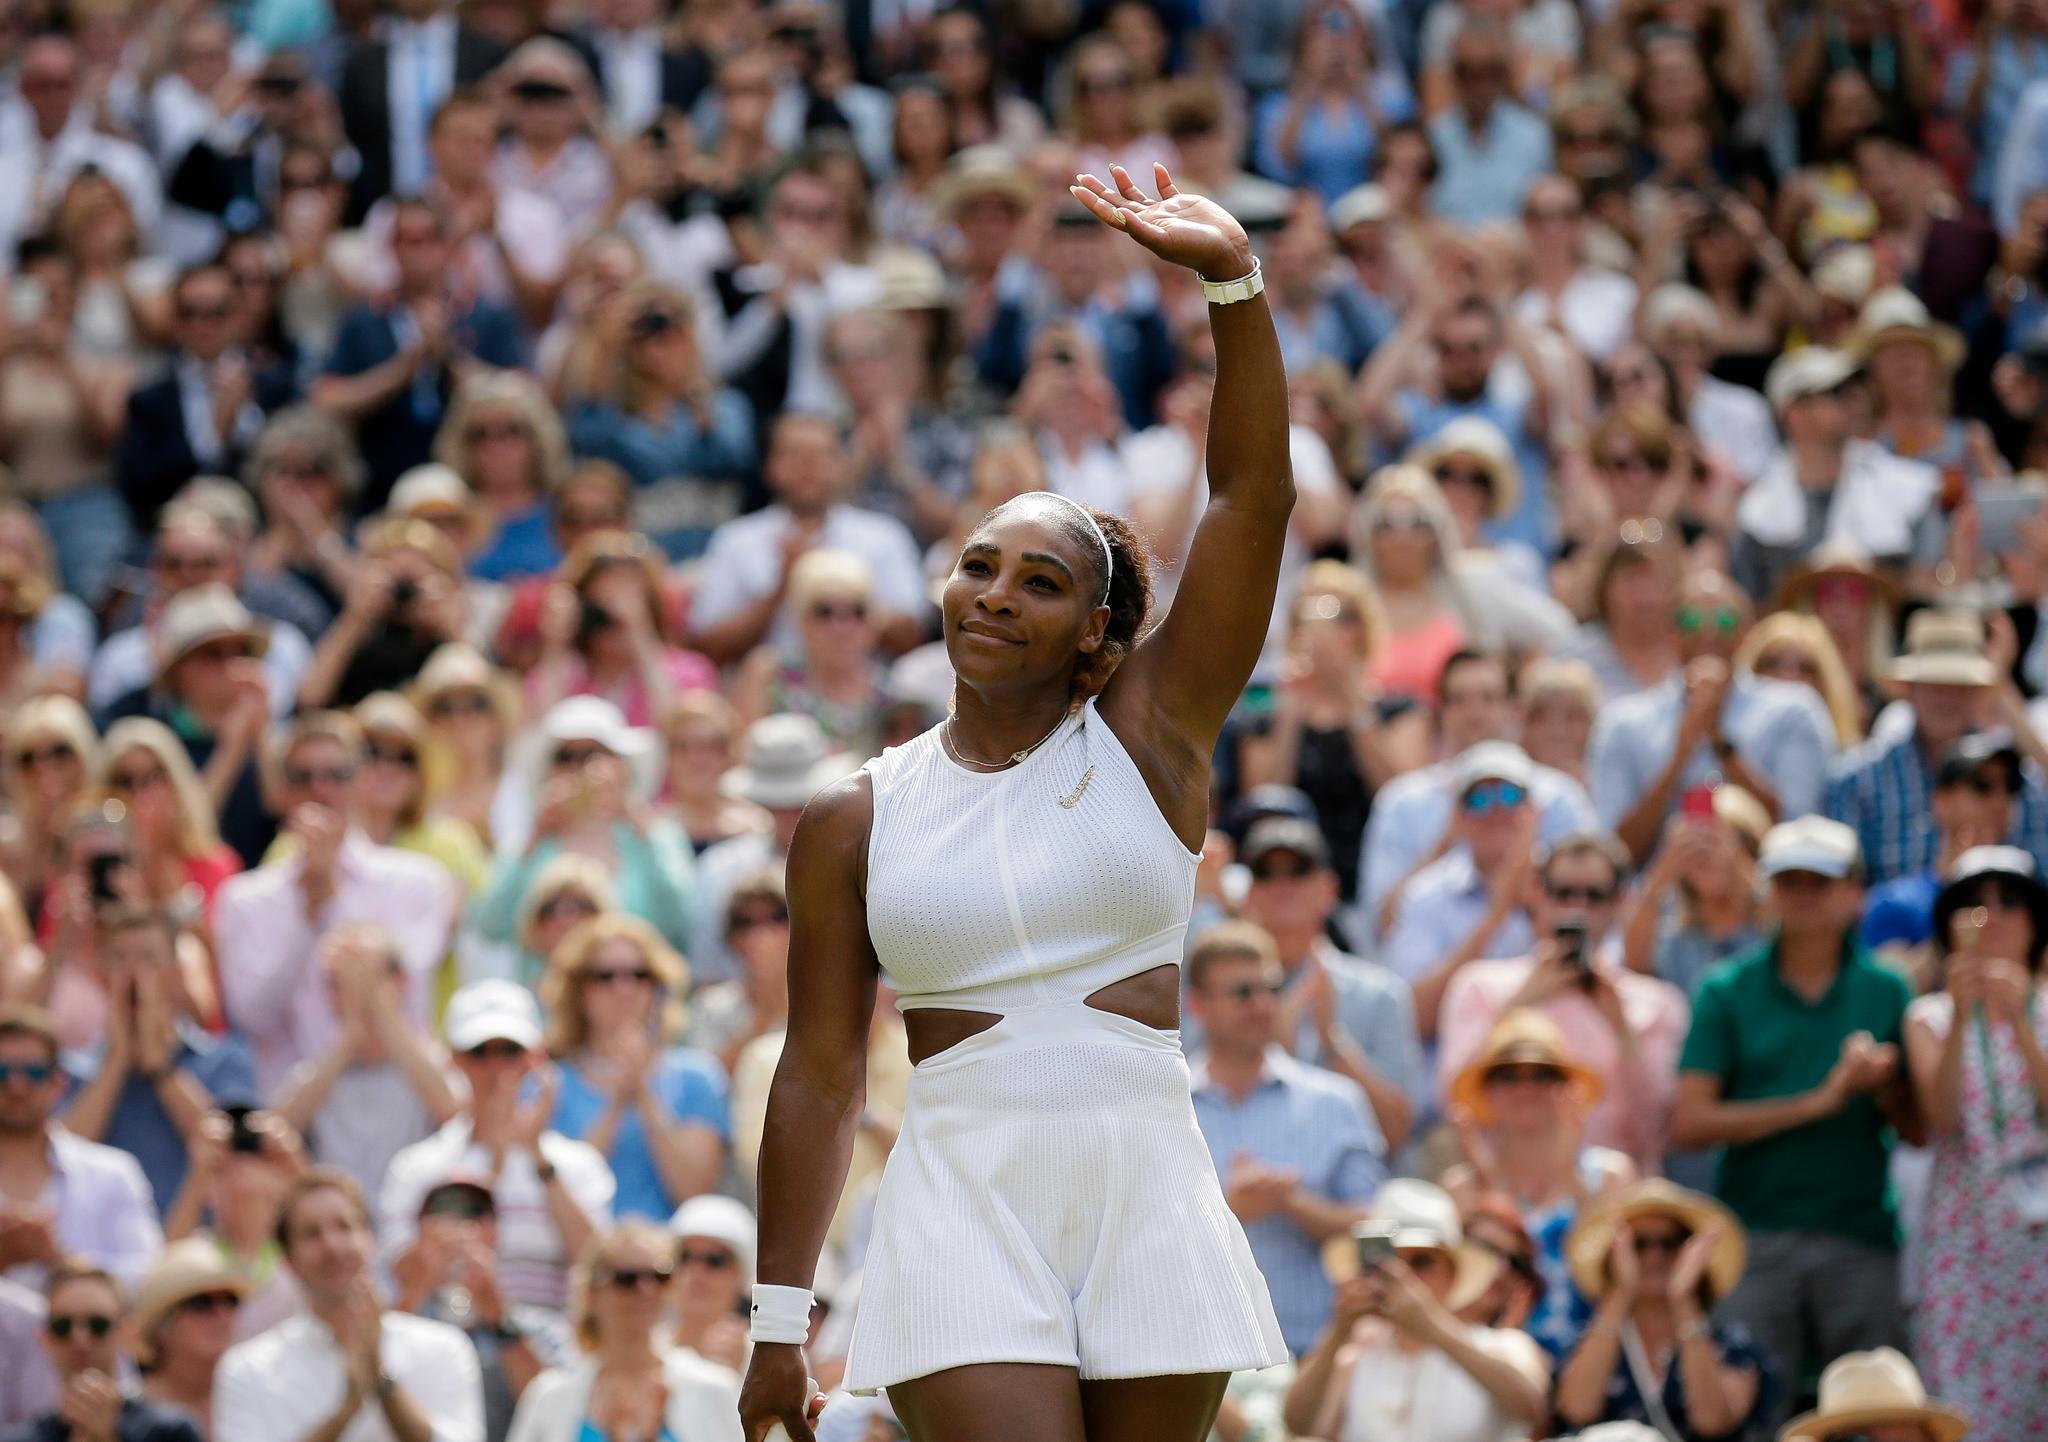 Serena Williams vinker til publikum etter å ha slått Barbora Strýcová og tatt seg til sin 11. Wimbledon-finale. Lørdag kan hun tangere Margaret Courts rekord på 24 Grand Slam-titler i single.